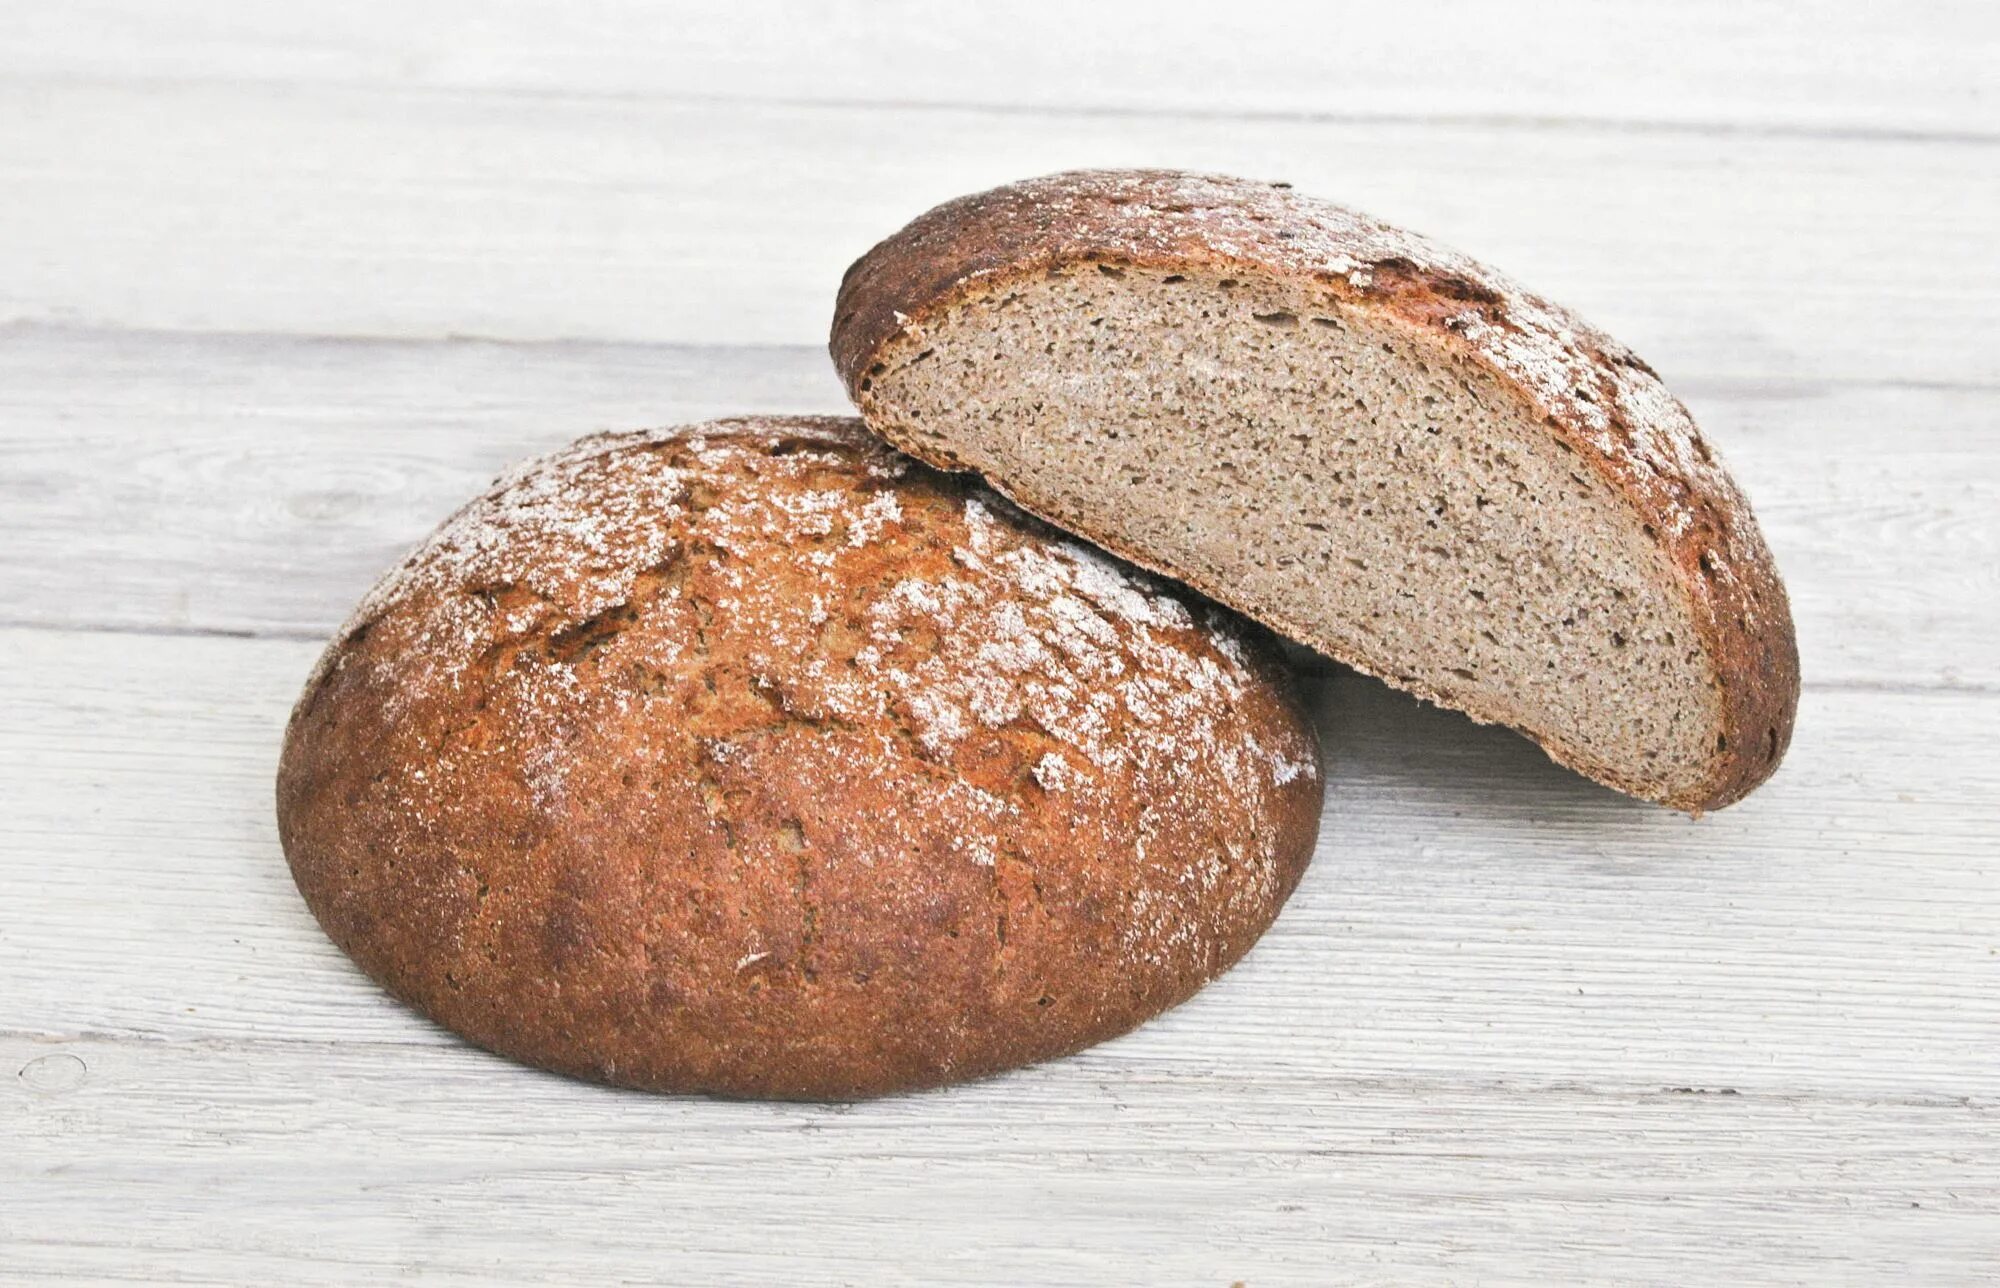 Хлеб ржанопшеничный поддовый. Хлеб ржано-пшеничный подовый. Хлеб пшеничный деревенский подовый. Хлеб пшеничный отрубной. Ржаной хлеб без пшеничной муки рецепт